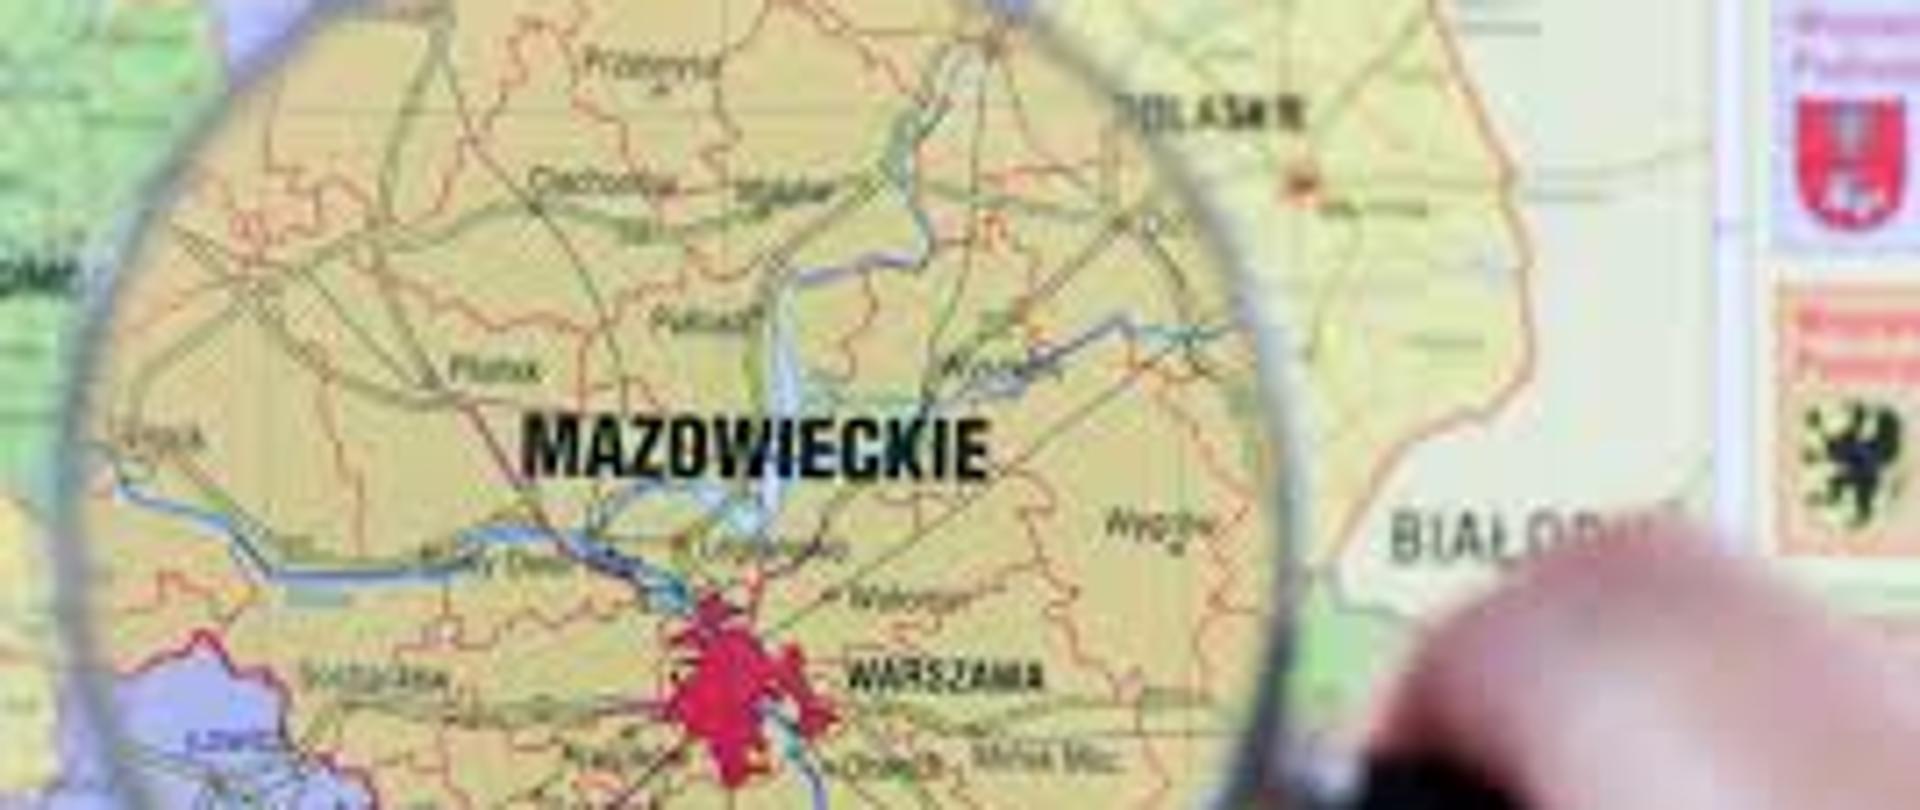 Województwo Mazowieckie